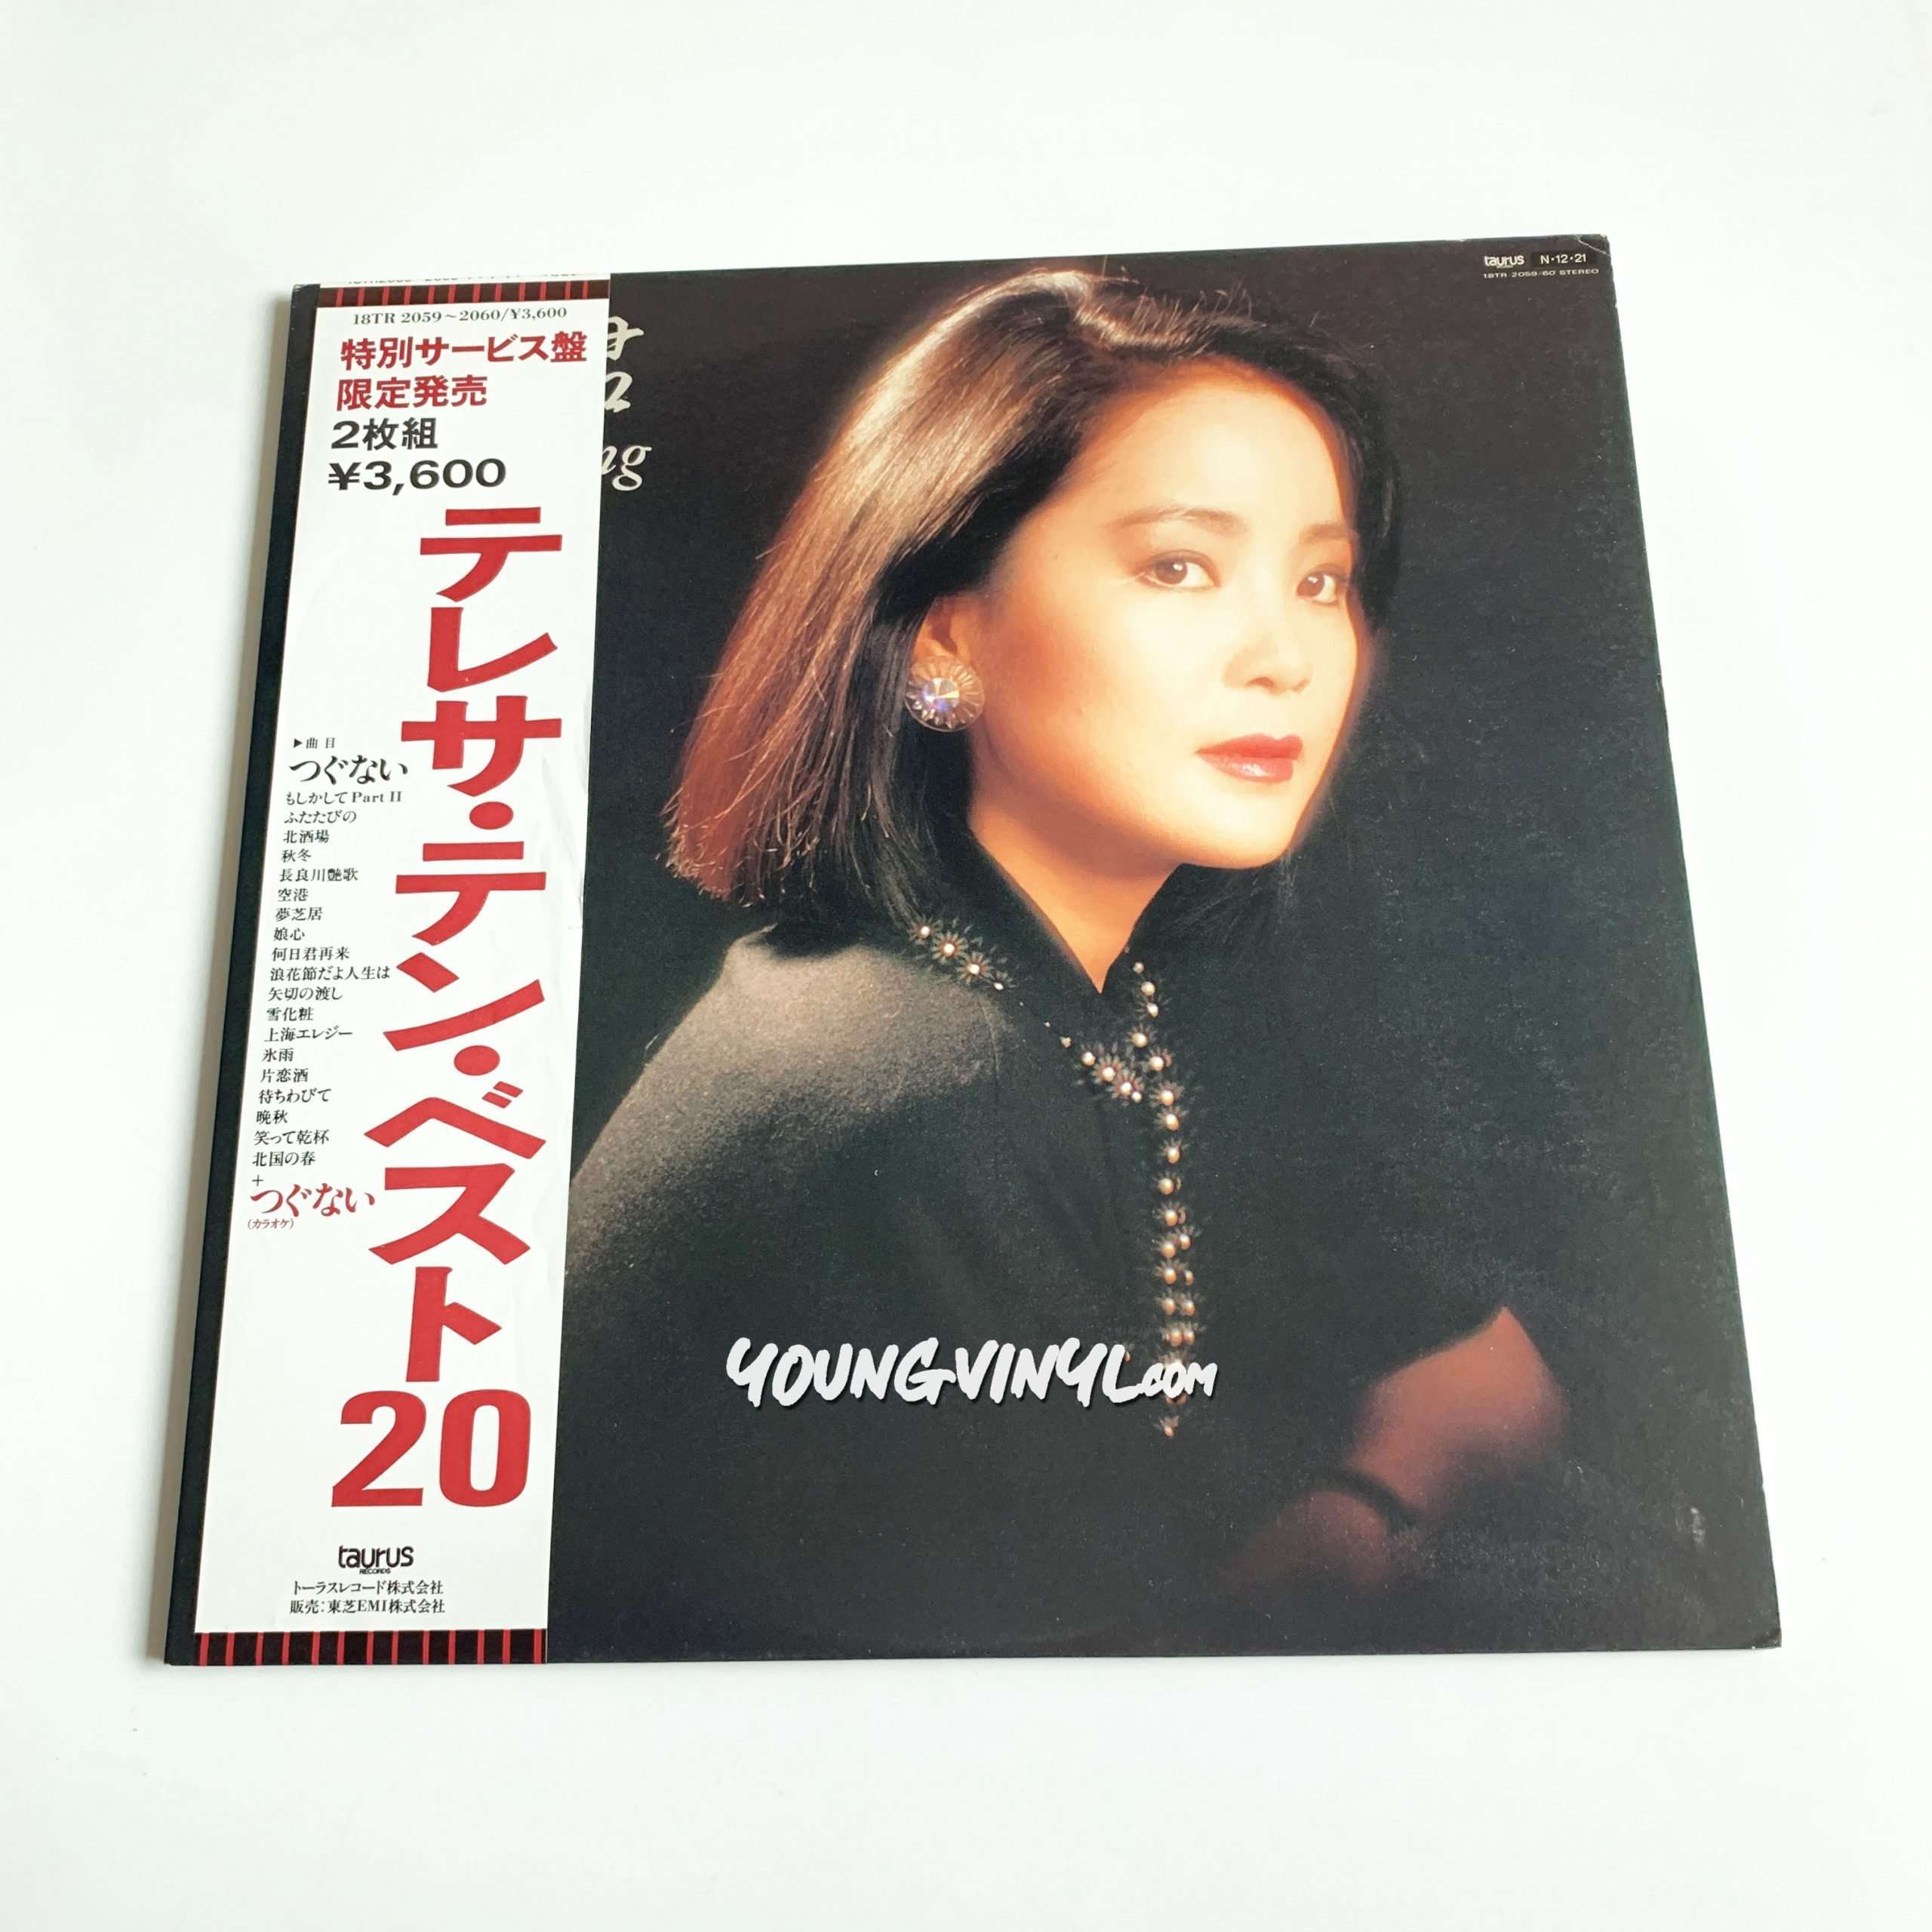 LP # テレサテン「あなたと生きる」 Teresa Teng 鄧麗君 レコード - 洋楽